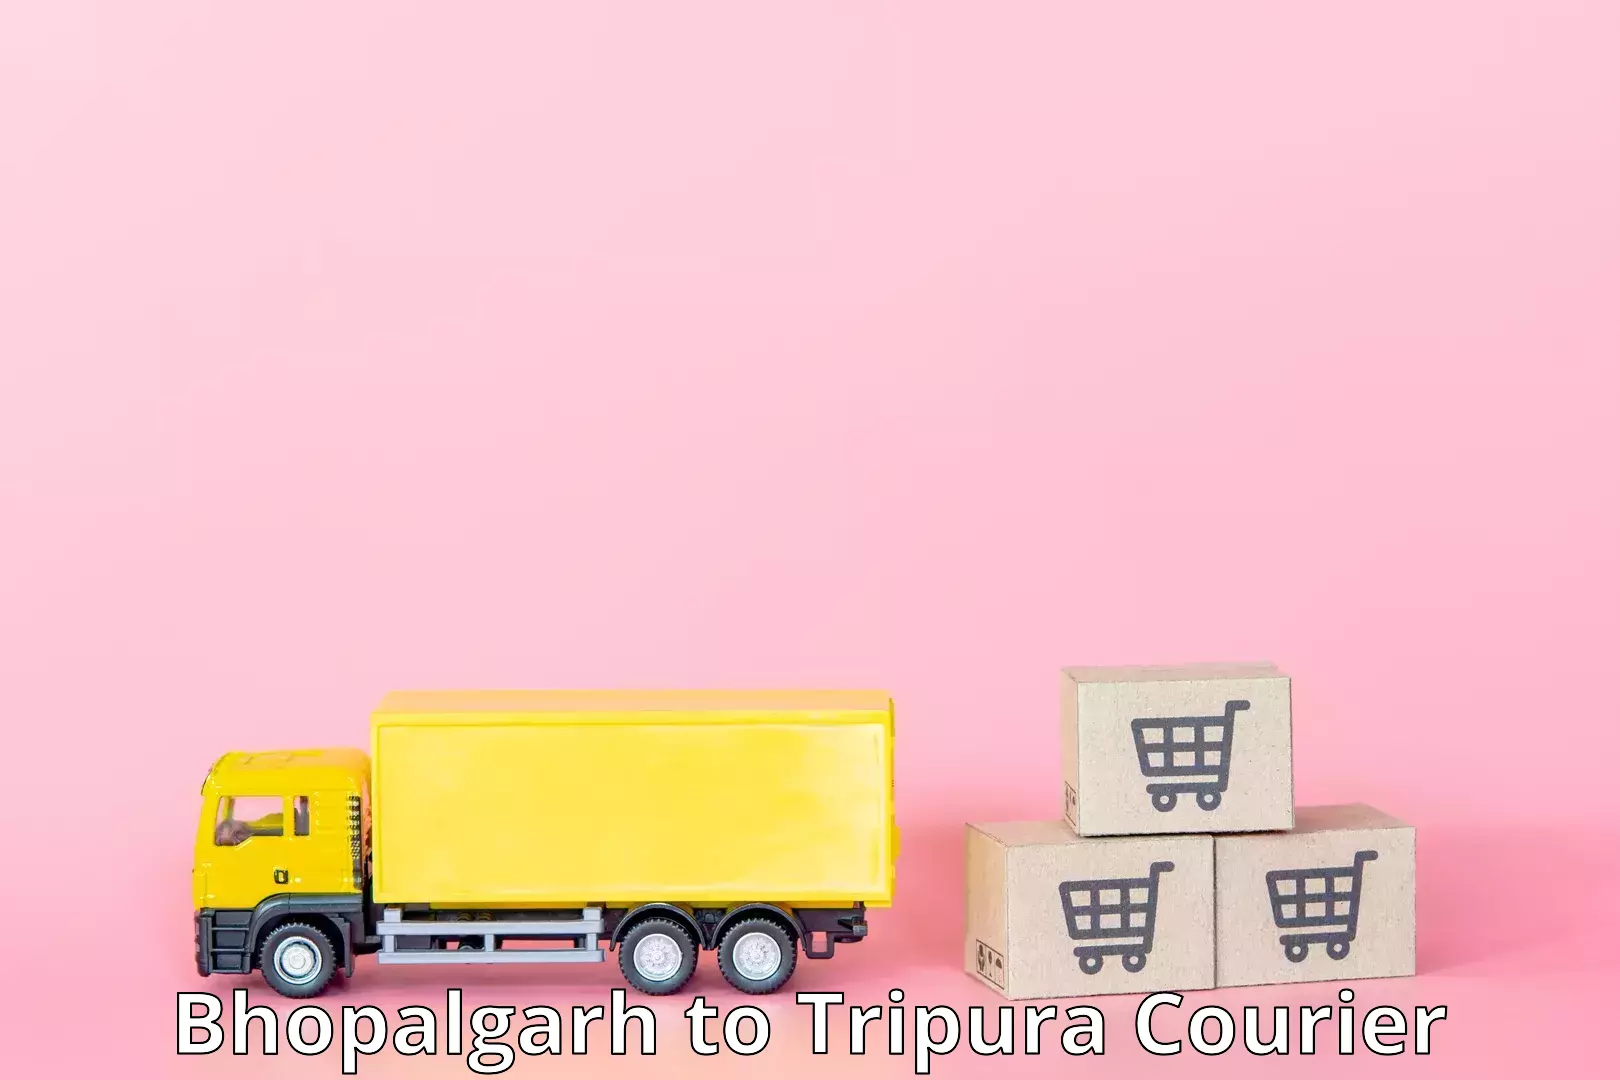 Smart logistics strategies Bhopalgarh to Tripura